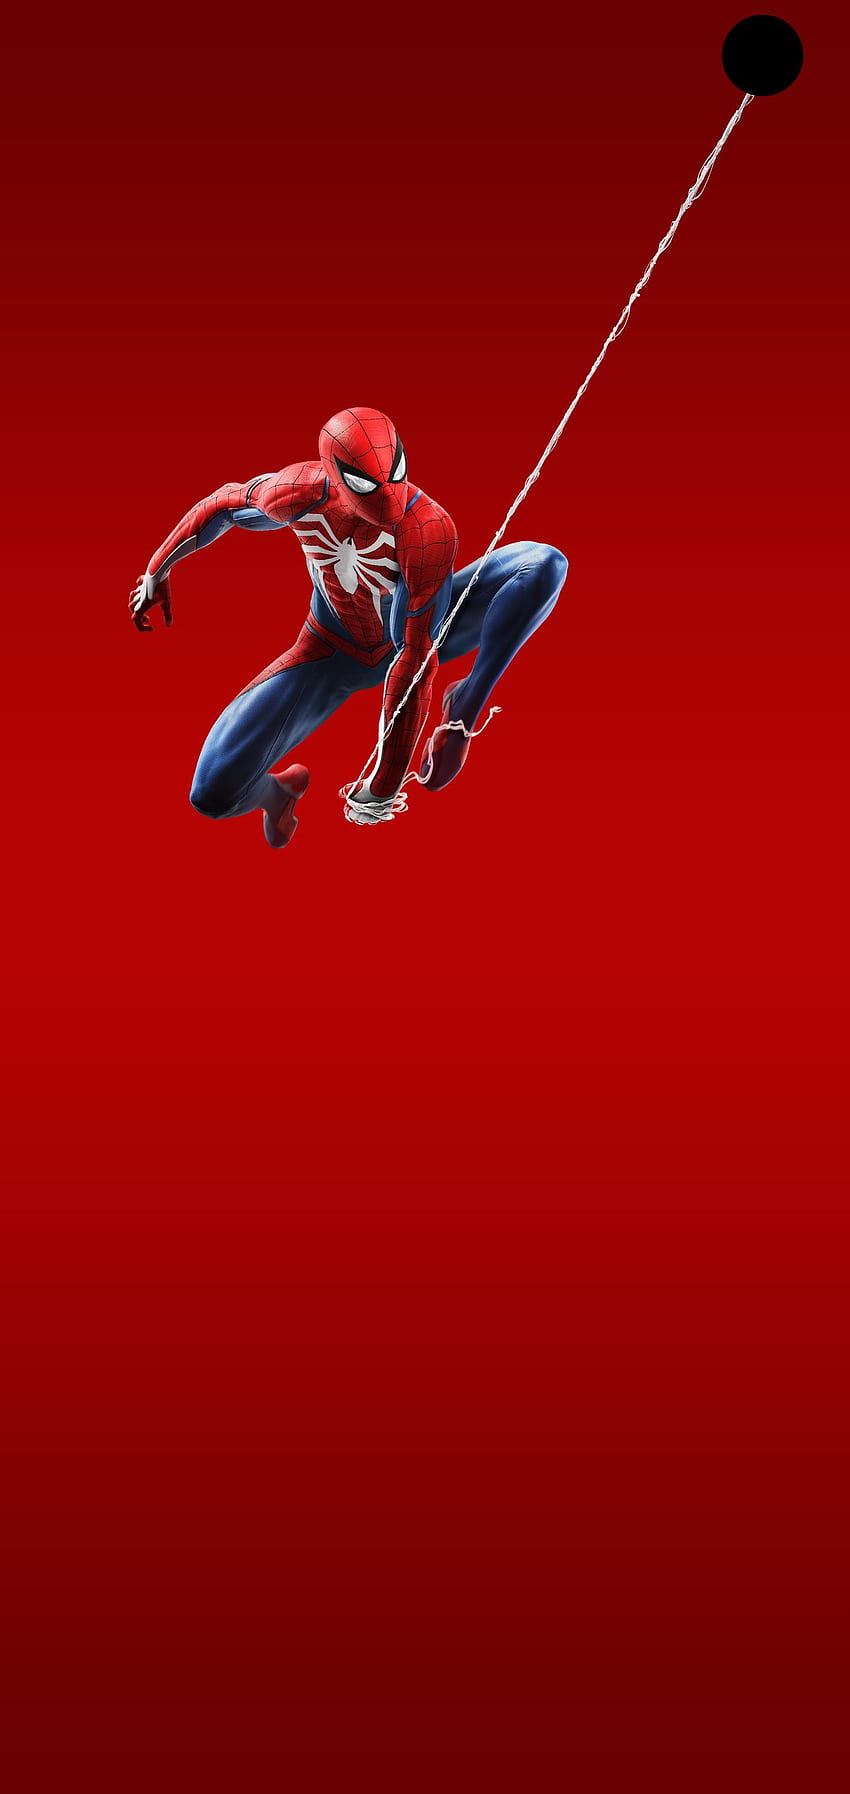 Perforadora Spider Man Web Swings Galaxy S10, Spider-Man Red fondo de pantalla del teléfono